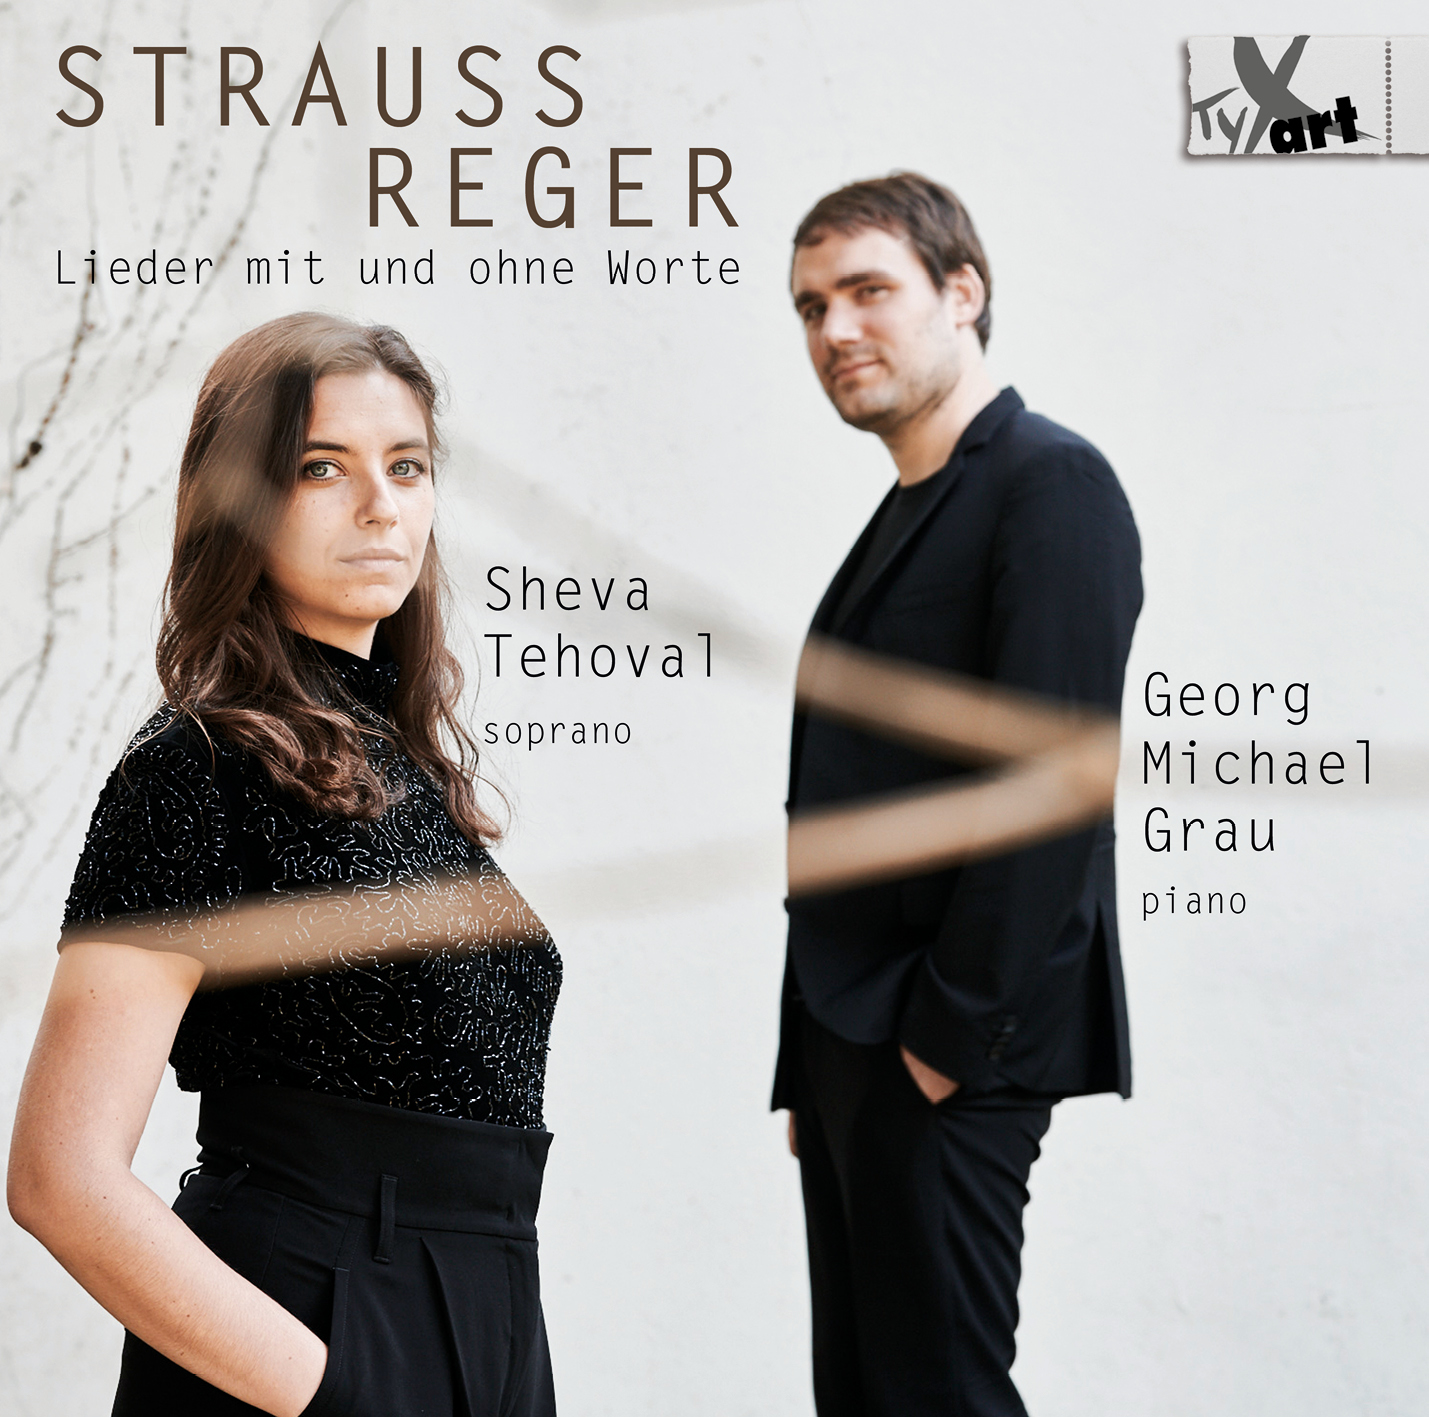 Strauss | Reger: Lieder mit und ohne Worte - Sheva Tehoval und Georg Michael Grau